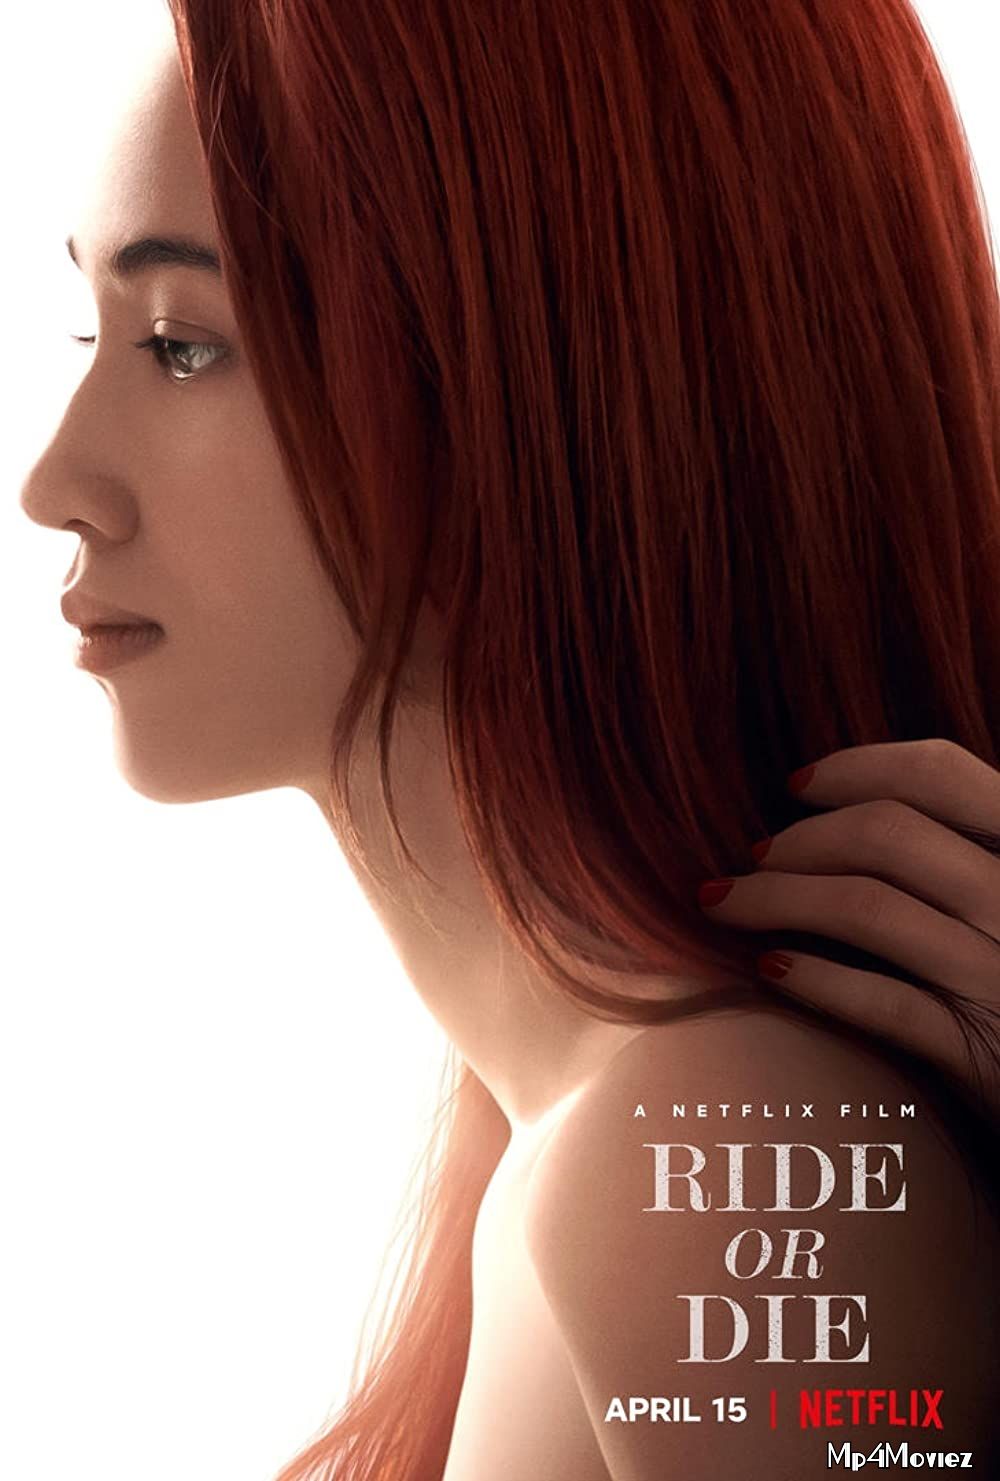 18+ Ride or Die (2021) Japanese NF HDRp download full movie